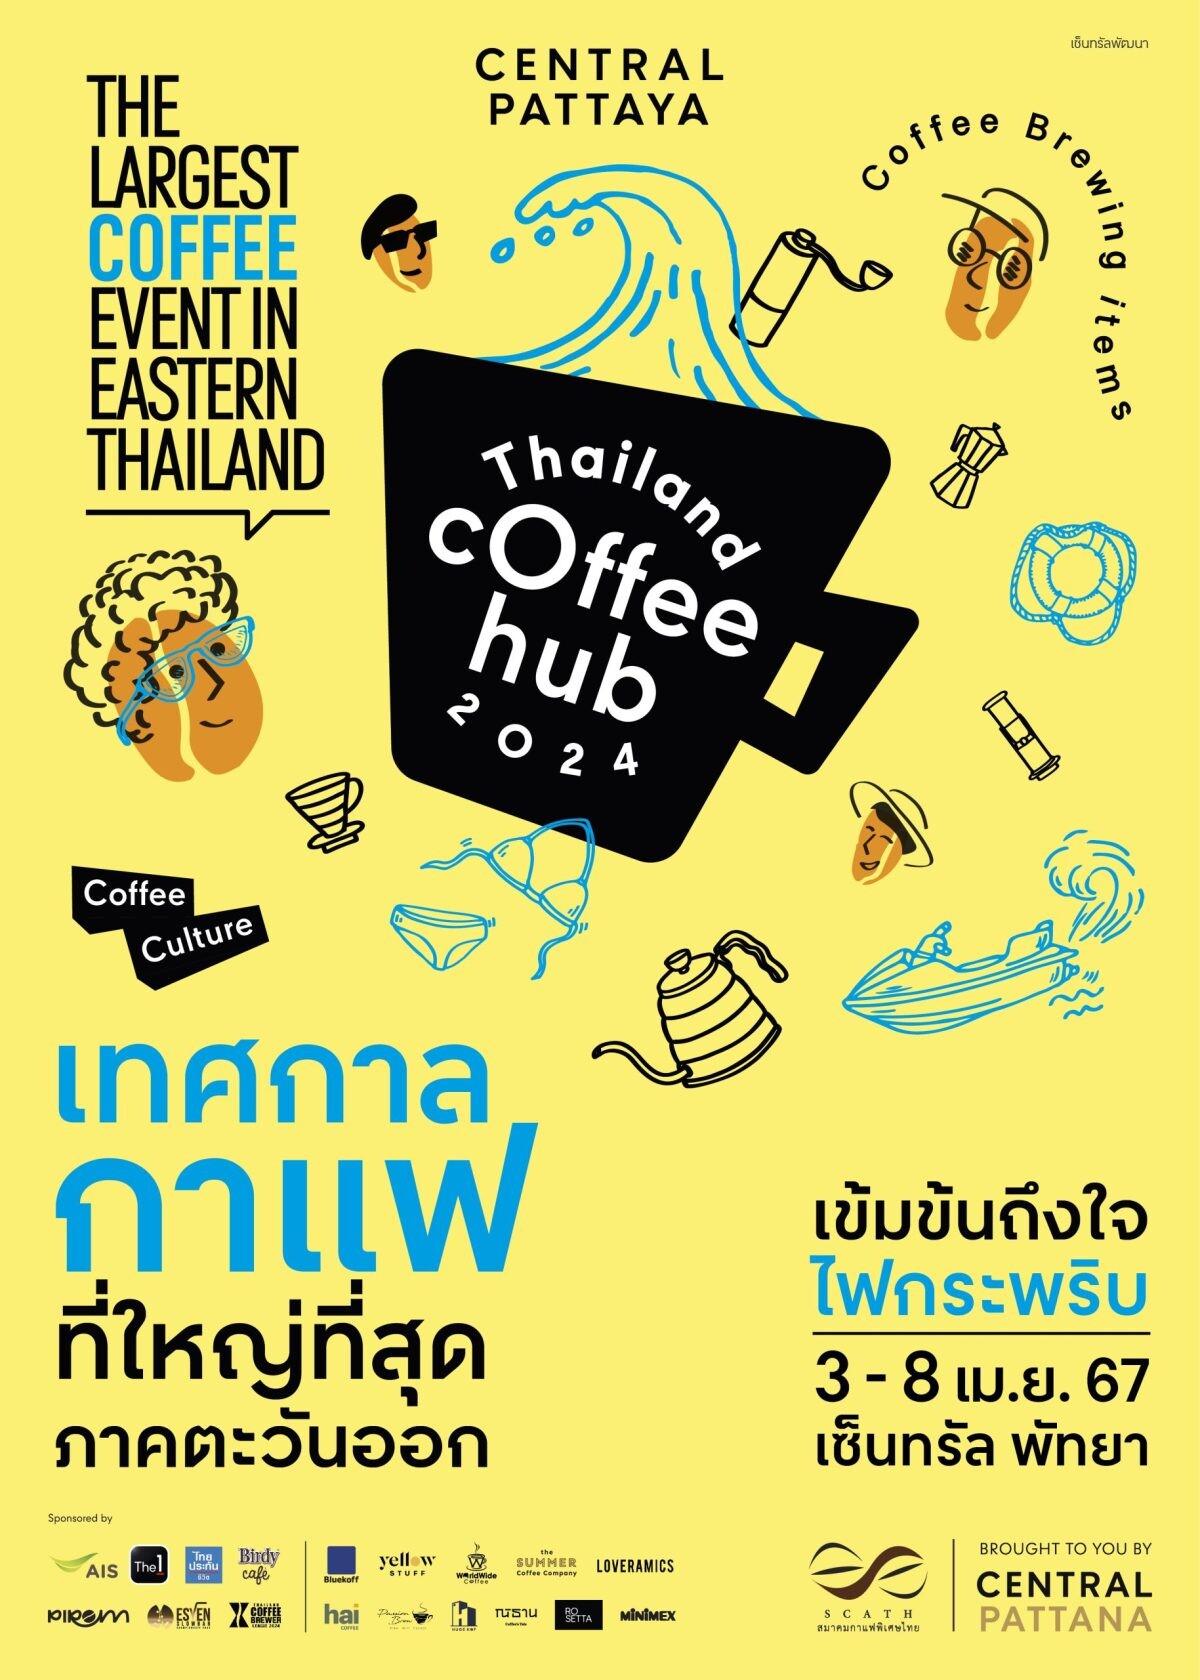 คอกาแฟไม่ควรพลาด! เทศกาลกาแฟที่ใหญ่ที่สุดในภาคตะวันออก "THAILAND COFFEE HUB 2024" วันที่ 3 - 8 เม.ย. 67 ที่เซ็นทรัล พัทยา